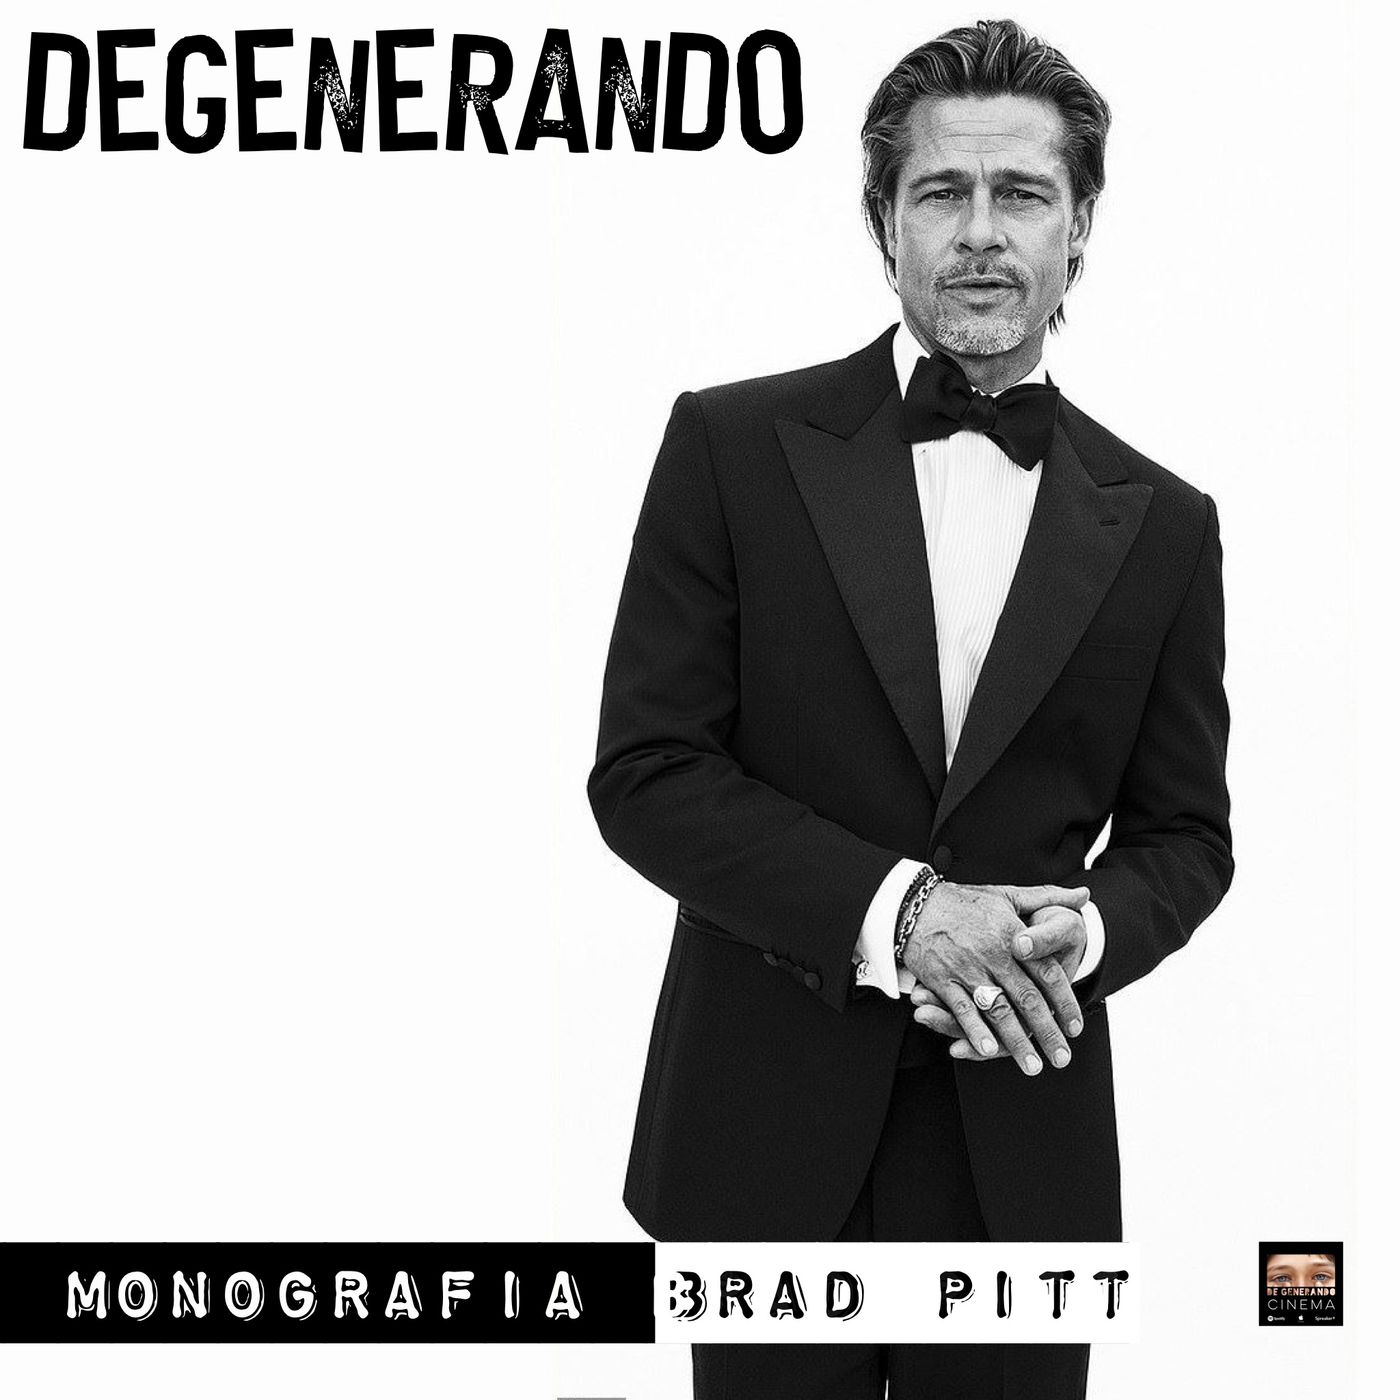 Brad Pitt - Monografia